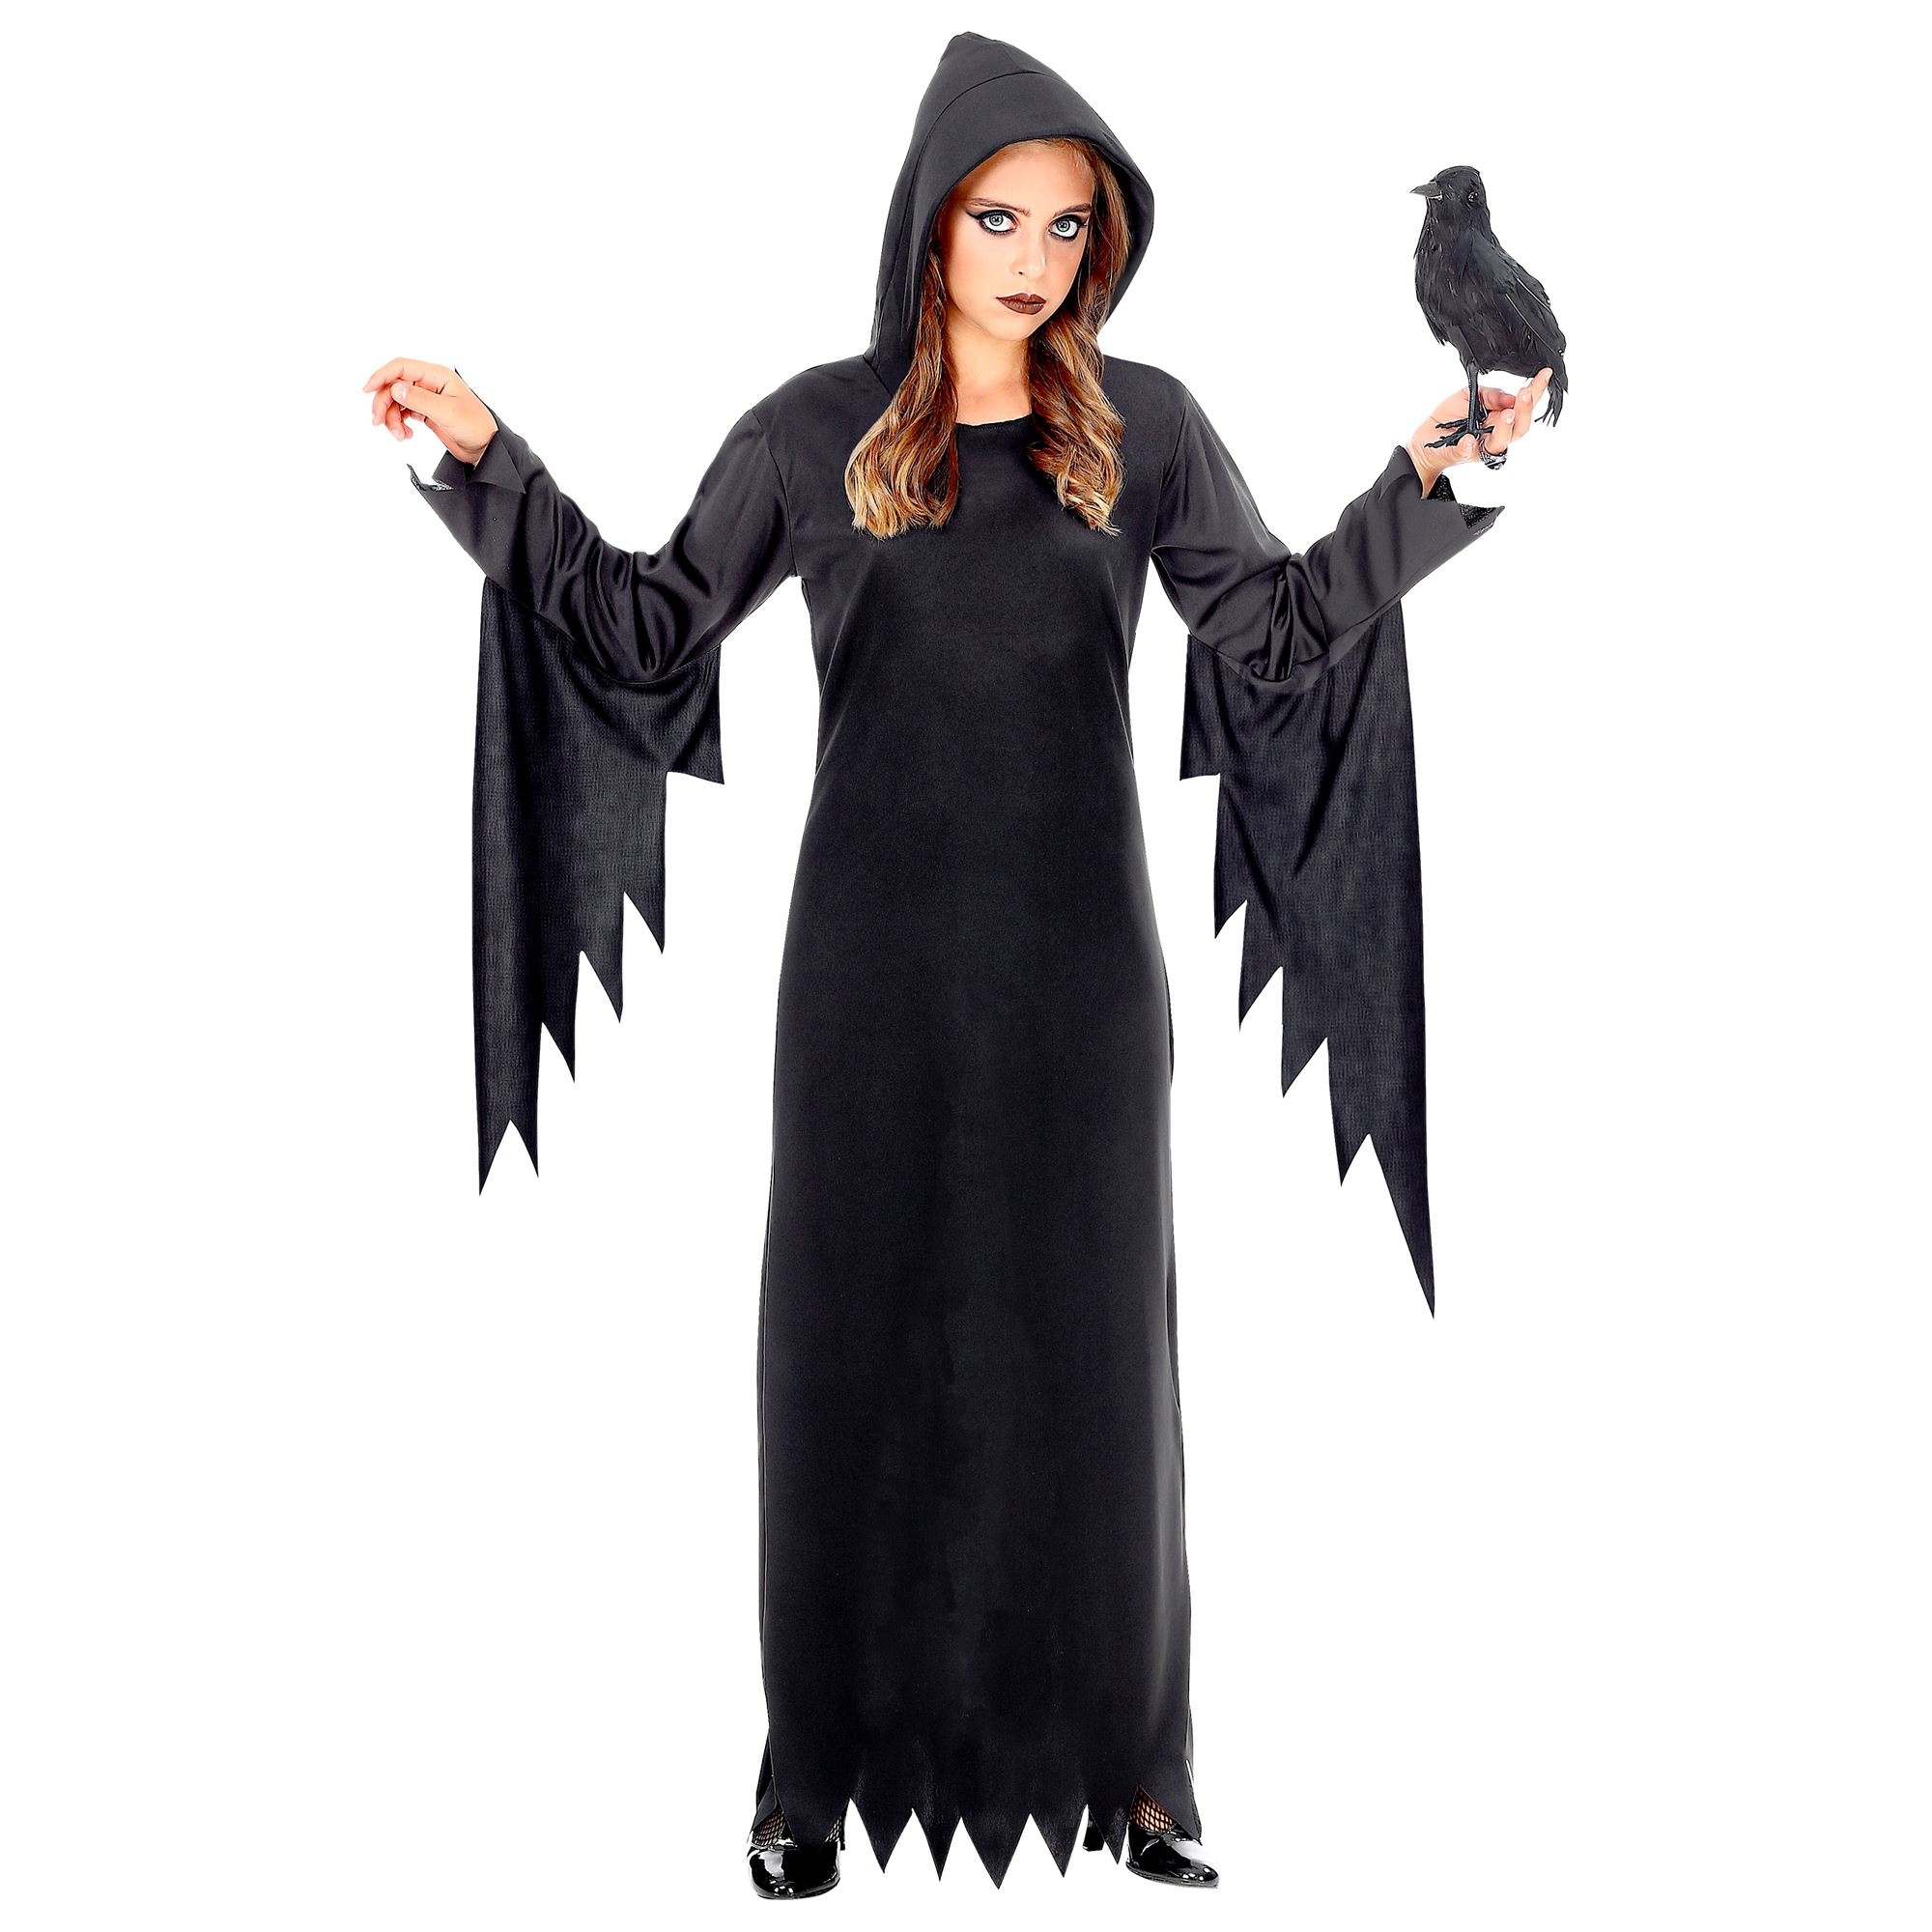 Widmann - Heks & Spider Lady & Voodoo & Duistere Religie Kostuum - Gotische Voodoo Koningin Duistere Zaken - Meisje - zwart - Maat 140 - Halloween - Verkleedkleding